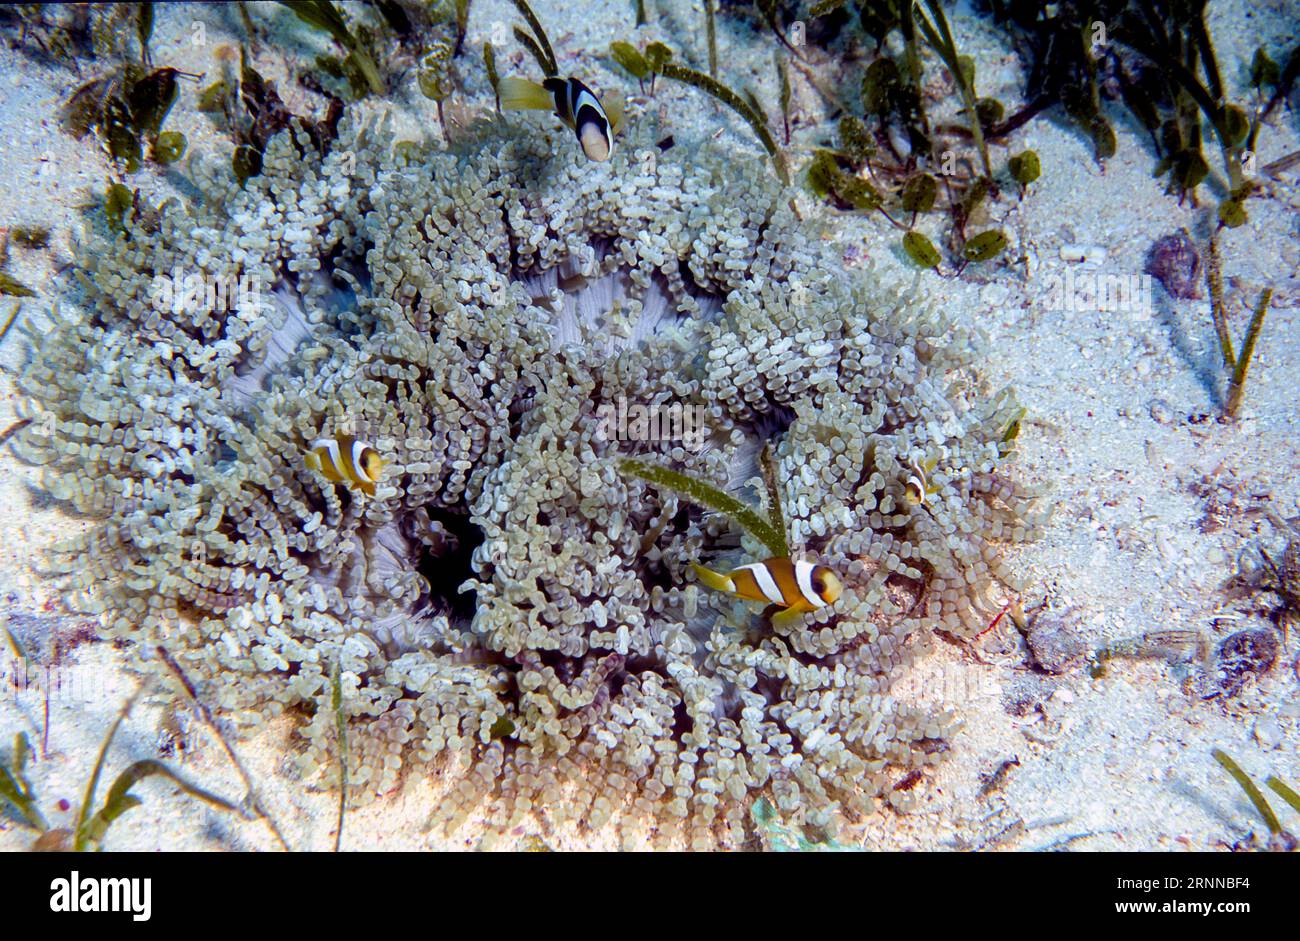 Anemone di mare con perline (Heteractis aurora) con anemonefish (Amphiprion clarkii). Foto di Cabilao, Filippine. Foto Stock